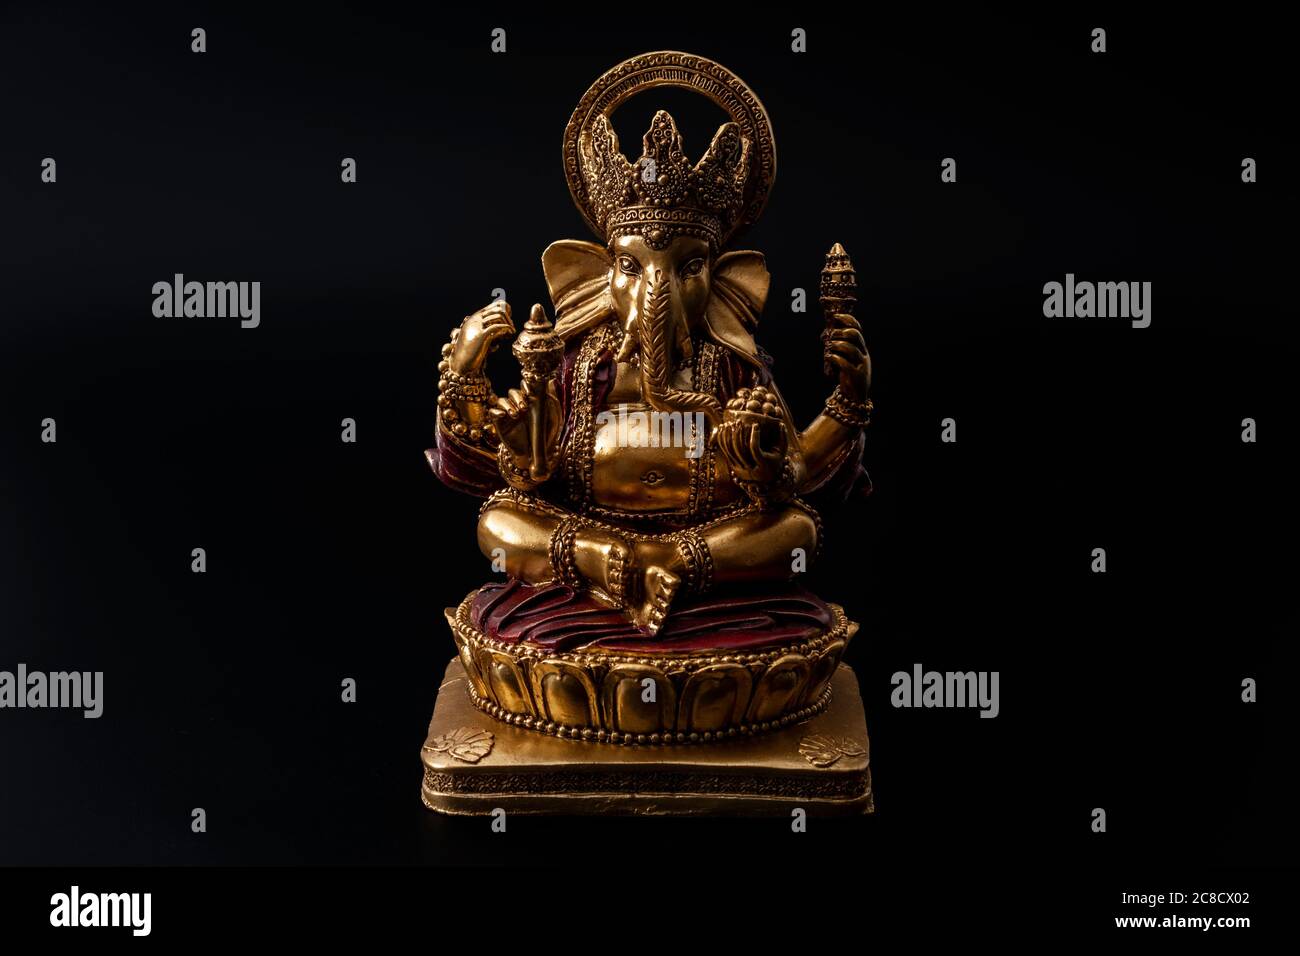 Bonne idée de Diwali, bénis divin et harmonie spirituelle avec Ganesh le Dieu de demi-éléphant hindou des débuts dans la méditation posent isolé Banque D'Images